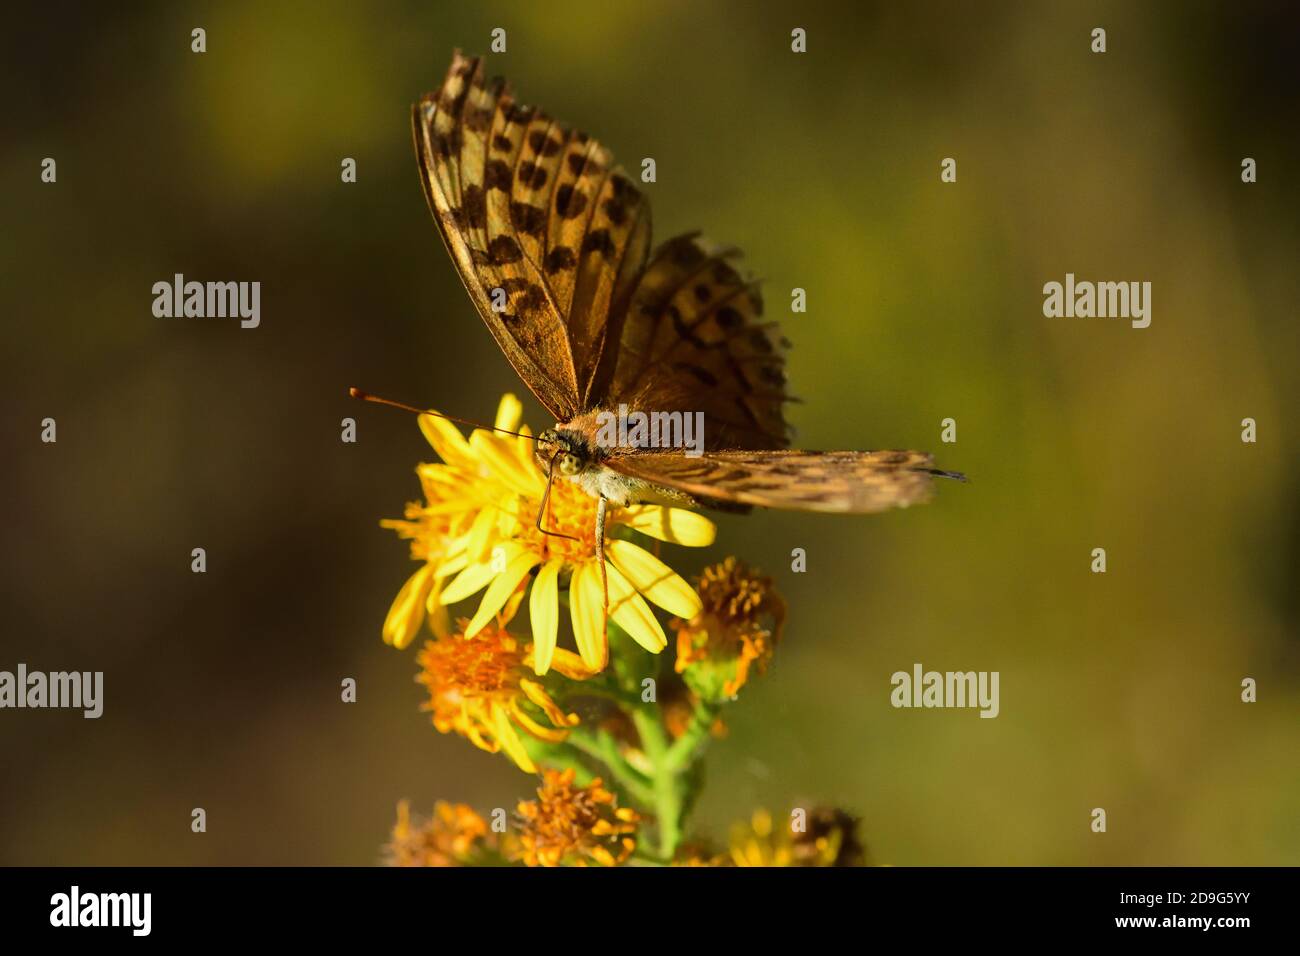 Nahaufnahme eines isolierten Schmetterlings Exemplar Königin von Spanien Fritillary, auf wilden Blumen gelegt. Stockfoto